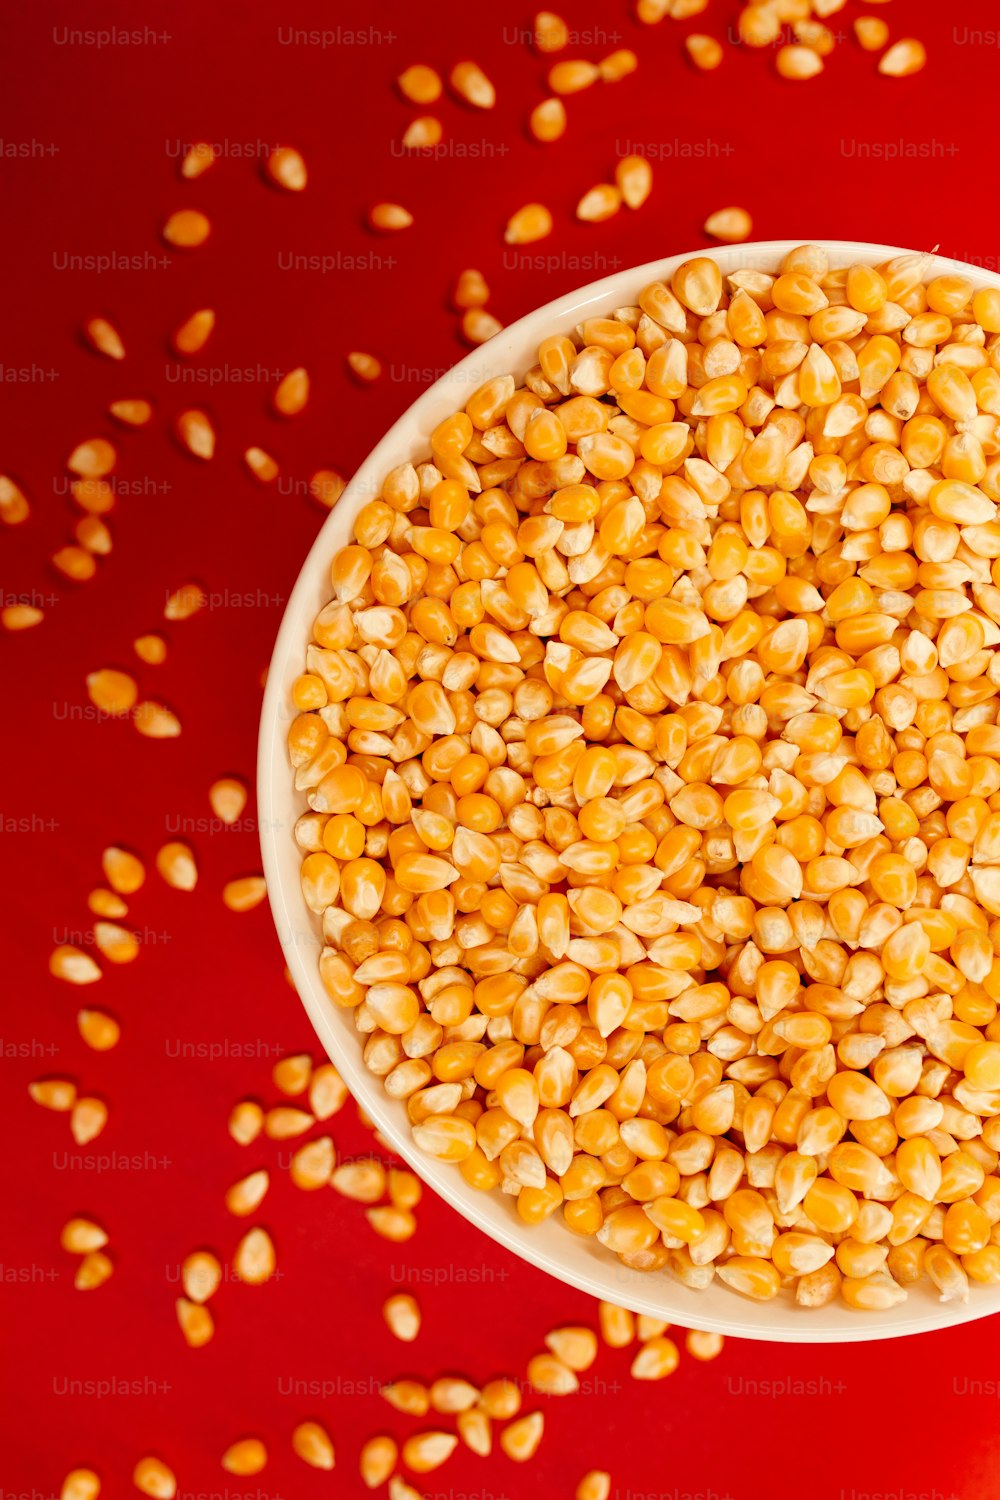 Un tazón blanco lleno de granos de maíz sobre una superficie roja